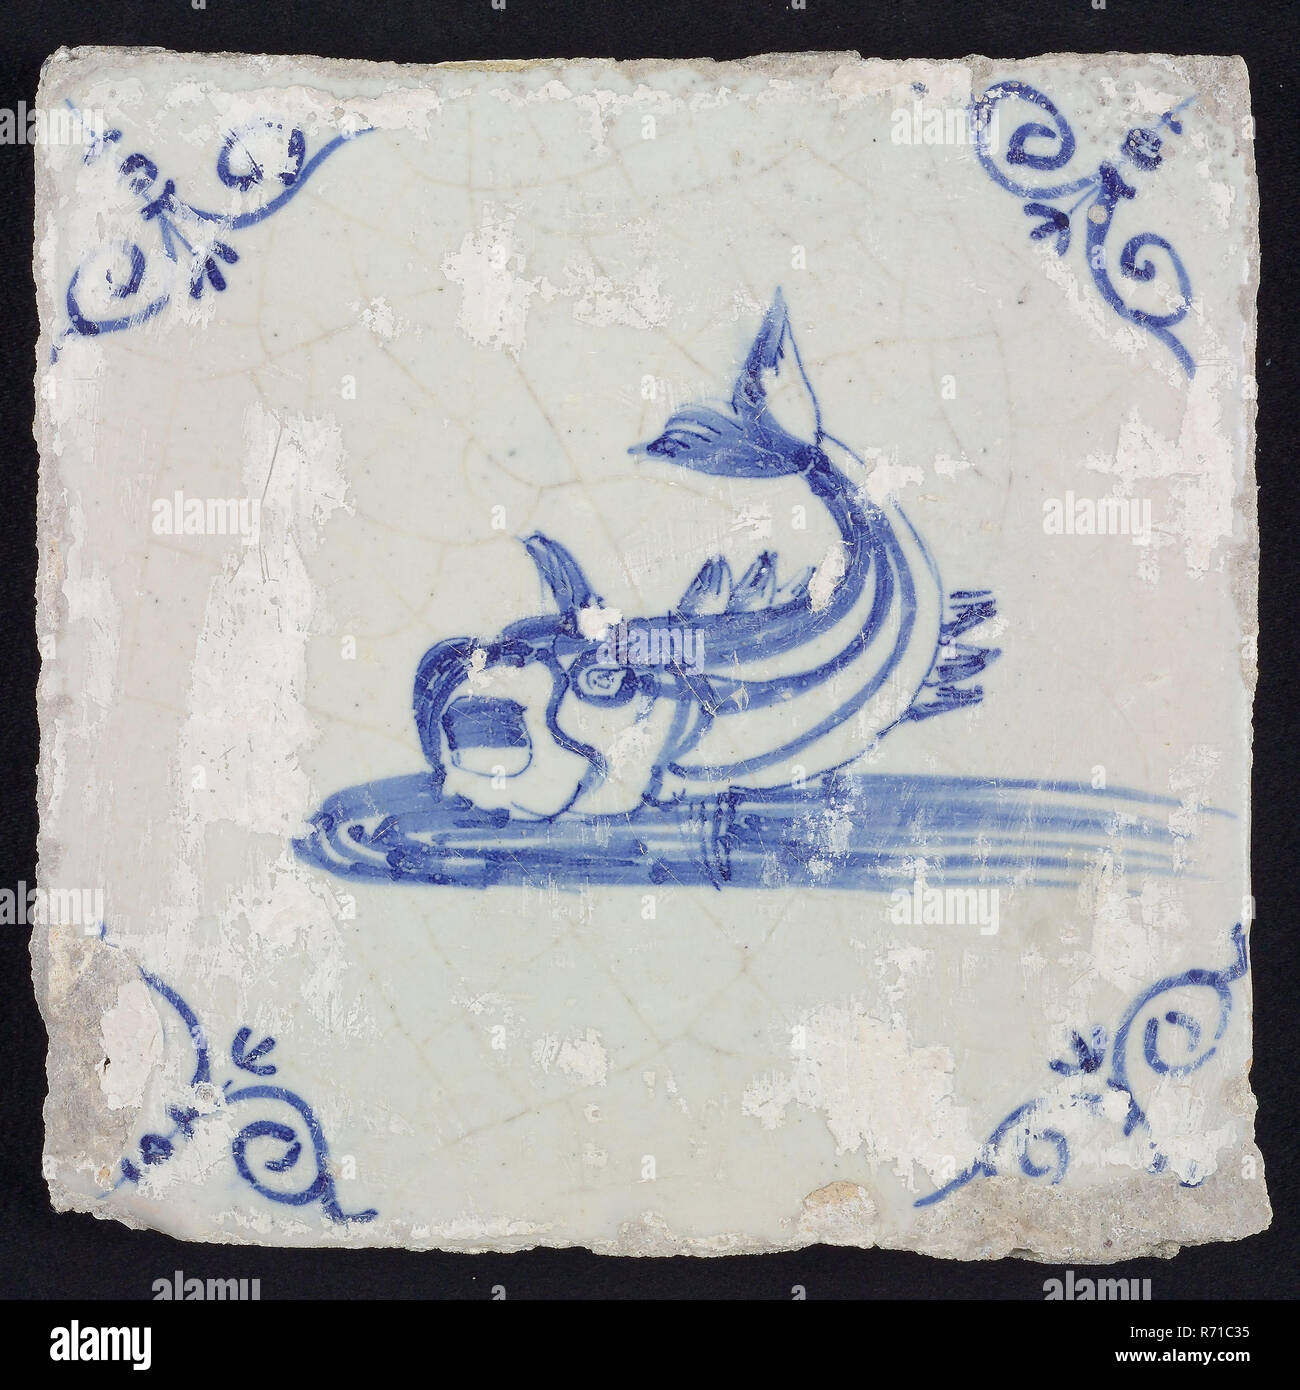 Tier Fliesen, unbekannte Fische im Wasser auf der linken Seite mit offenem Schnabel und Ringelschwanz, Blau auf Weiß, Ecke Motiv gelenkt 'sox Kopf, wandfliese Kachel skulptur keramik Steingut glasiert, gebackene 2 x Glasierte lackiert Stockfoto